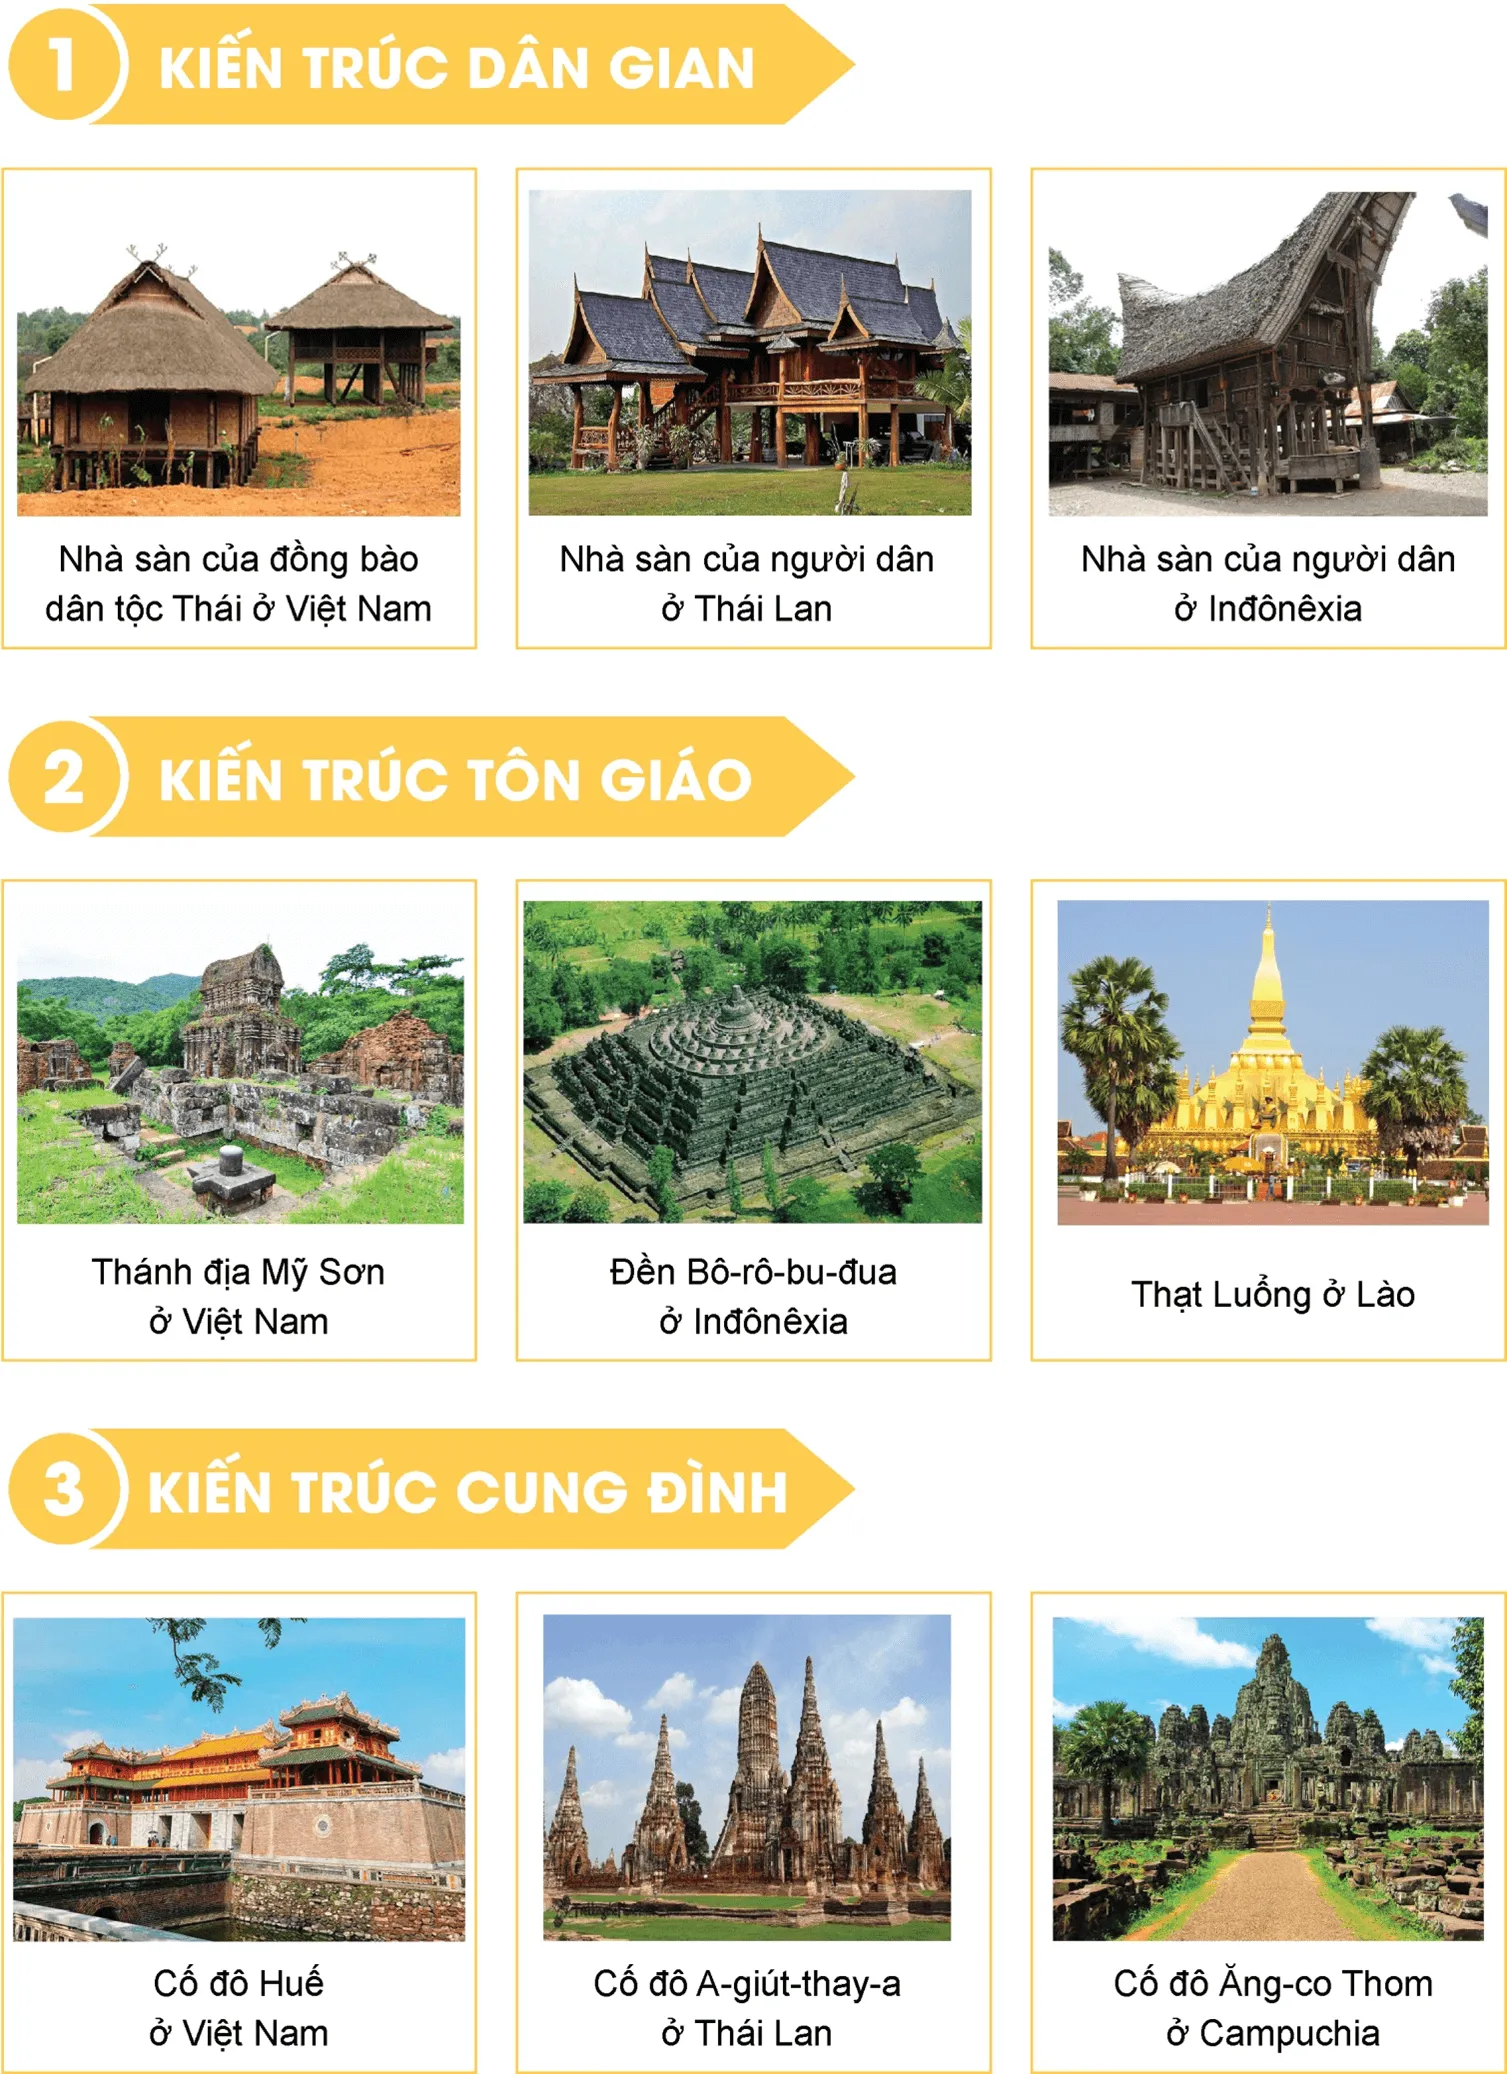 Sưu tầm tranh ảnh tư liệu về các công trình kiến trúc Đông Nam Á Van Dung 3 Trang 82 Lich Su 10